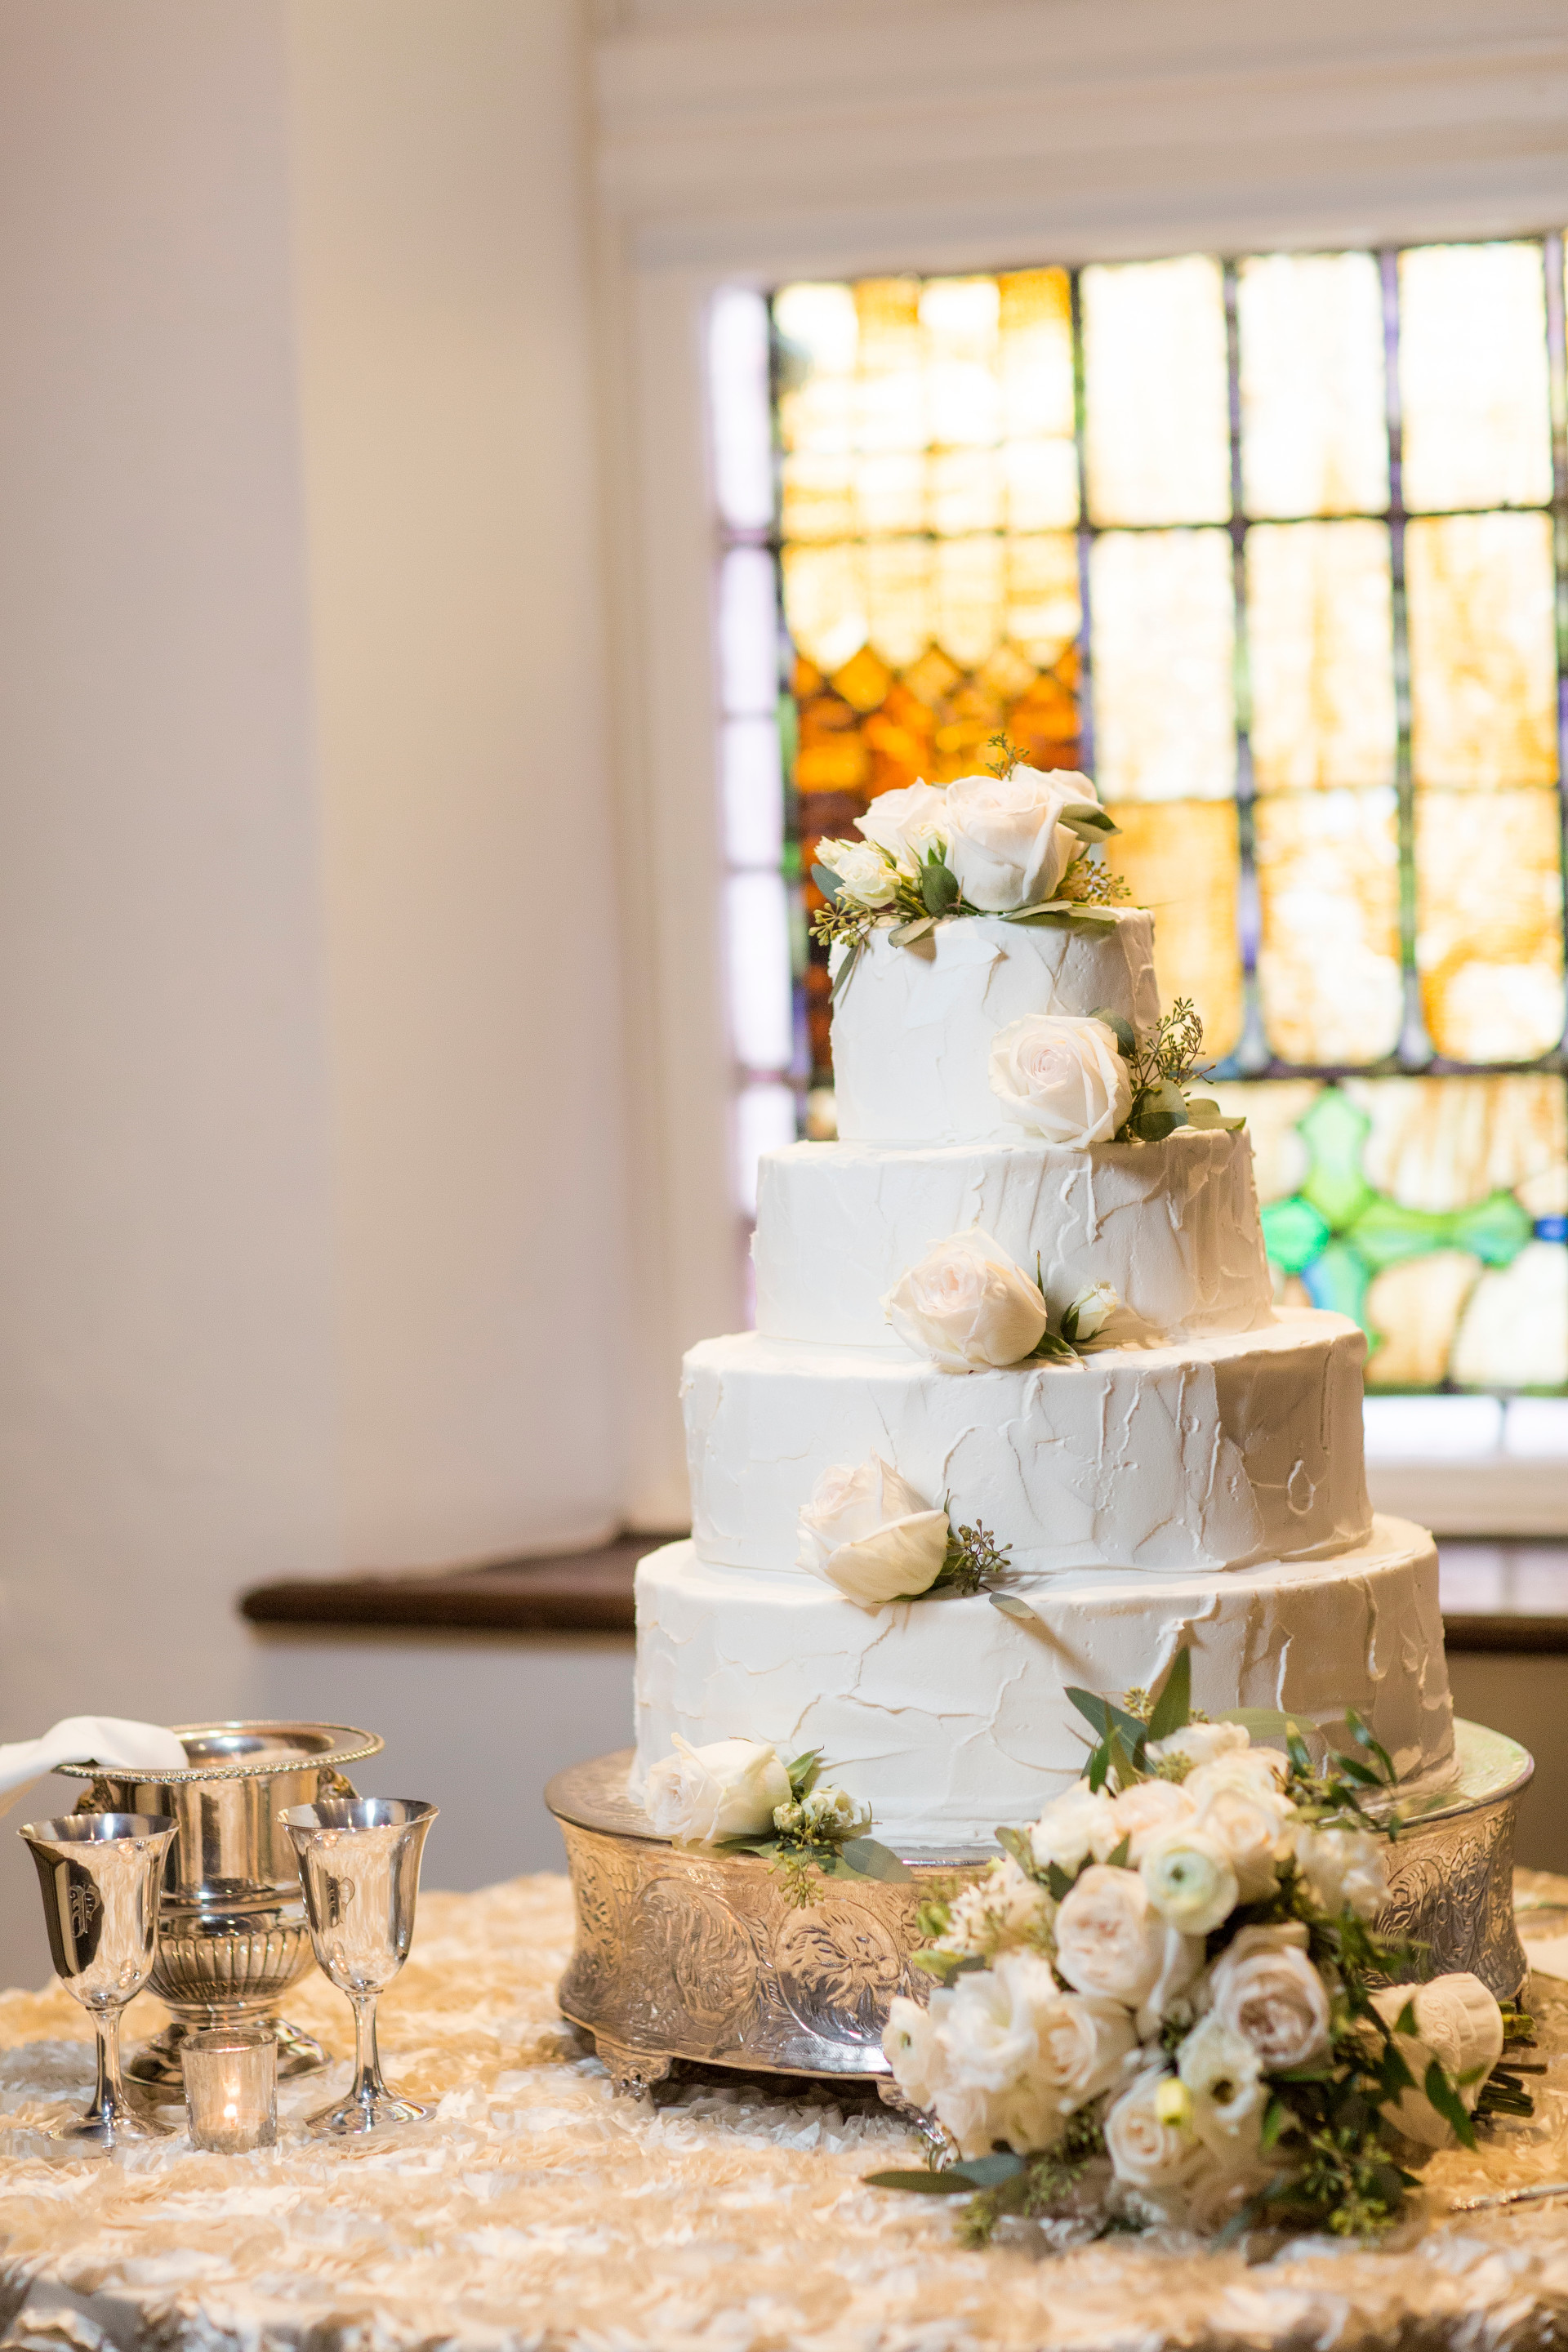 A Classic Alabama Church Wedding - The Overwhelmed Bride Wedding Blog